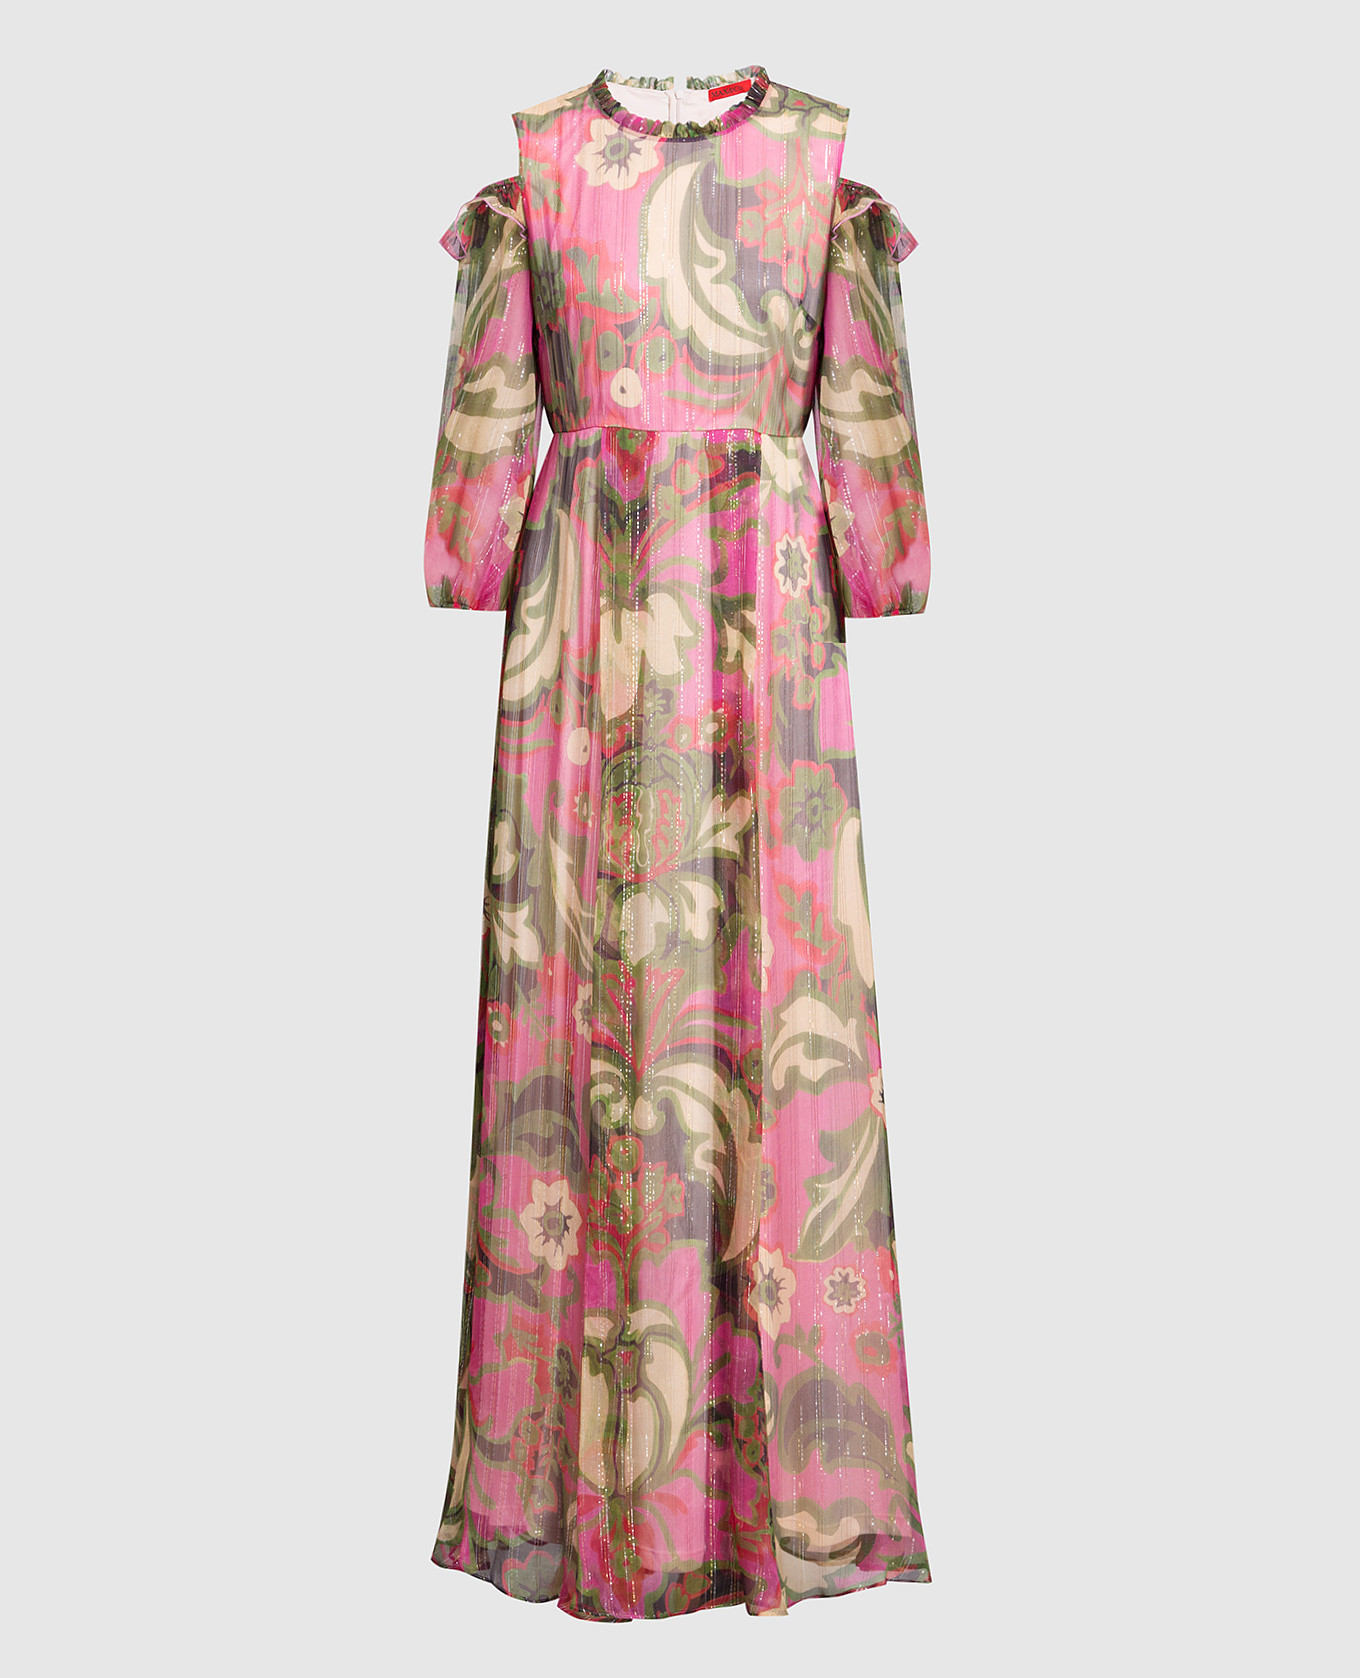 Розовое платье макси из шелка в цветочный принт с люрексом.